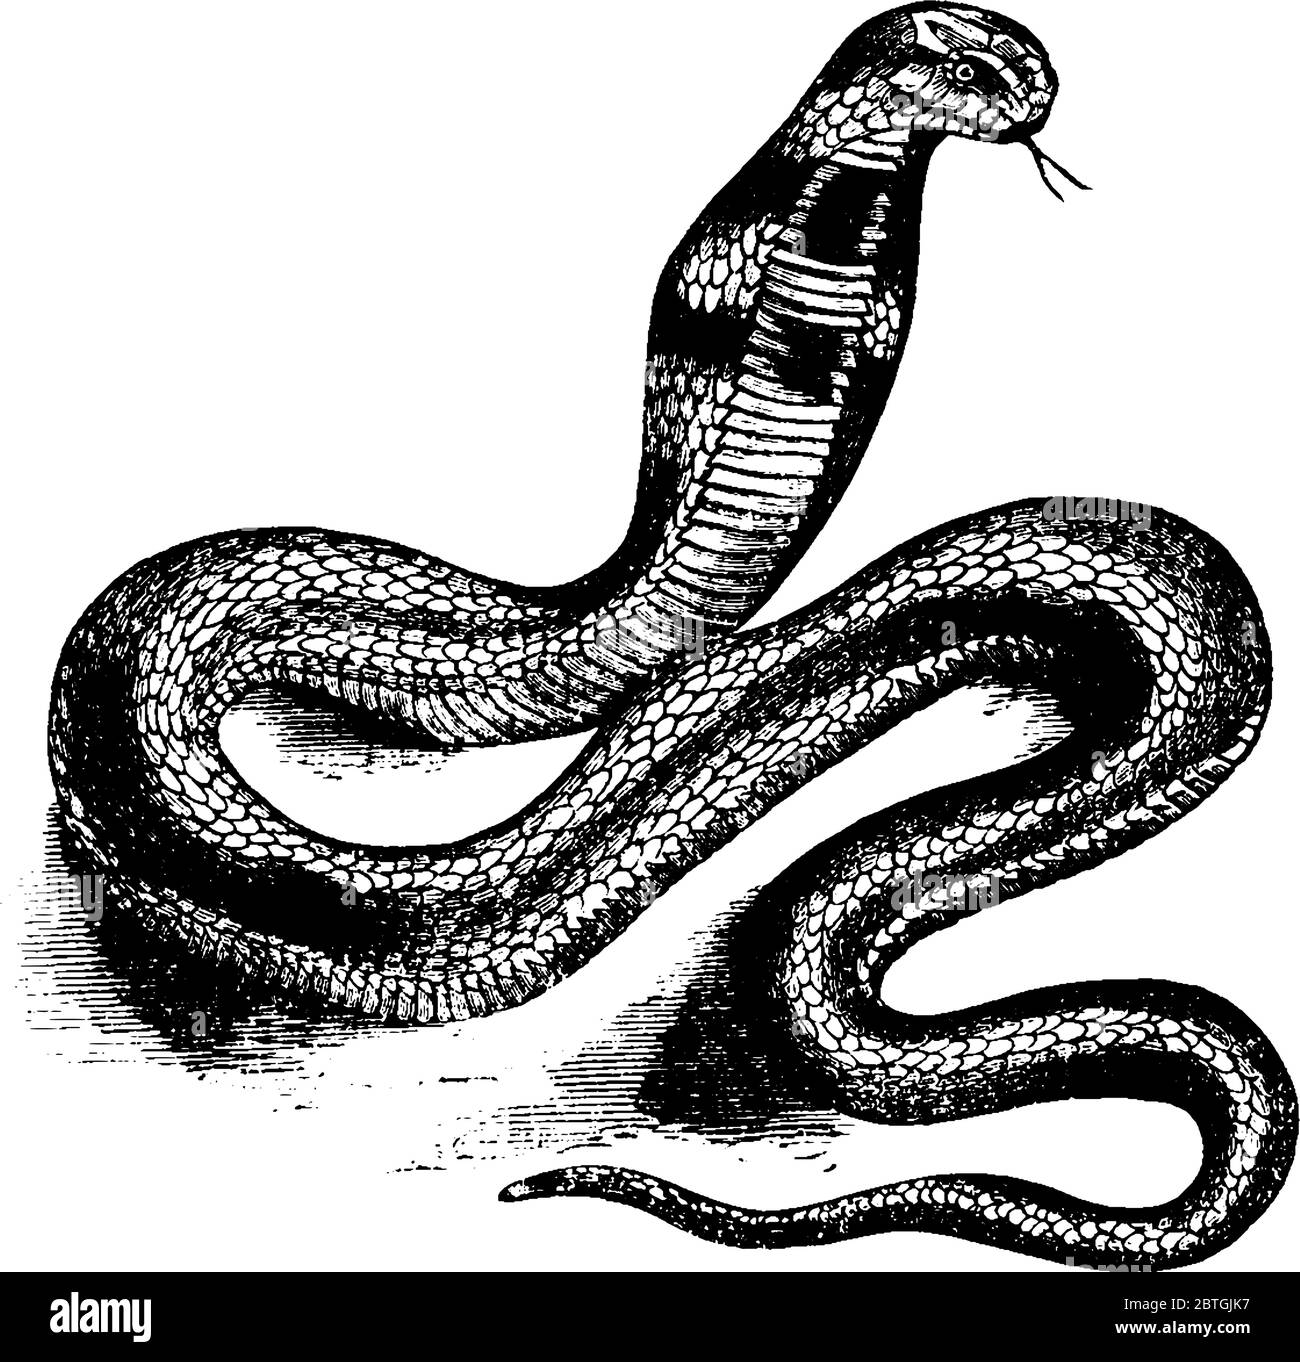 Los cobras son serpientes venenosas de la familia Elapidae, dibujo de líneas vintage o ilustración de grabado. Ilustración del Vector